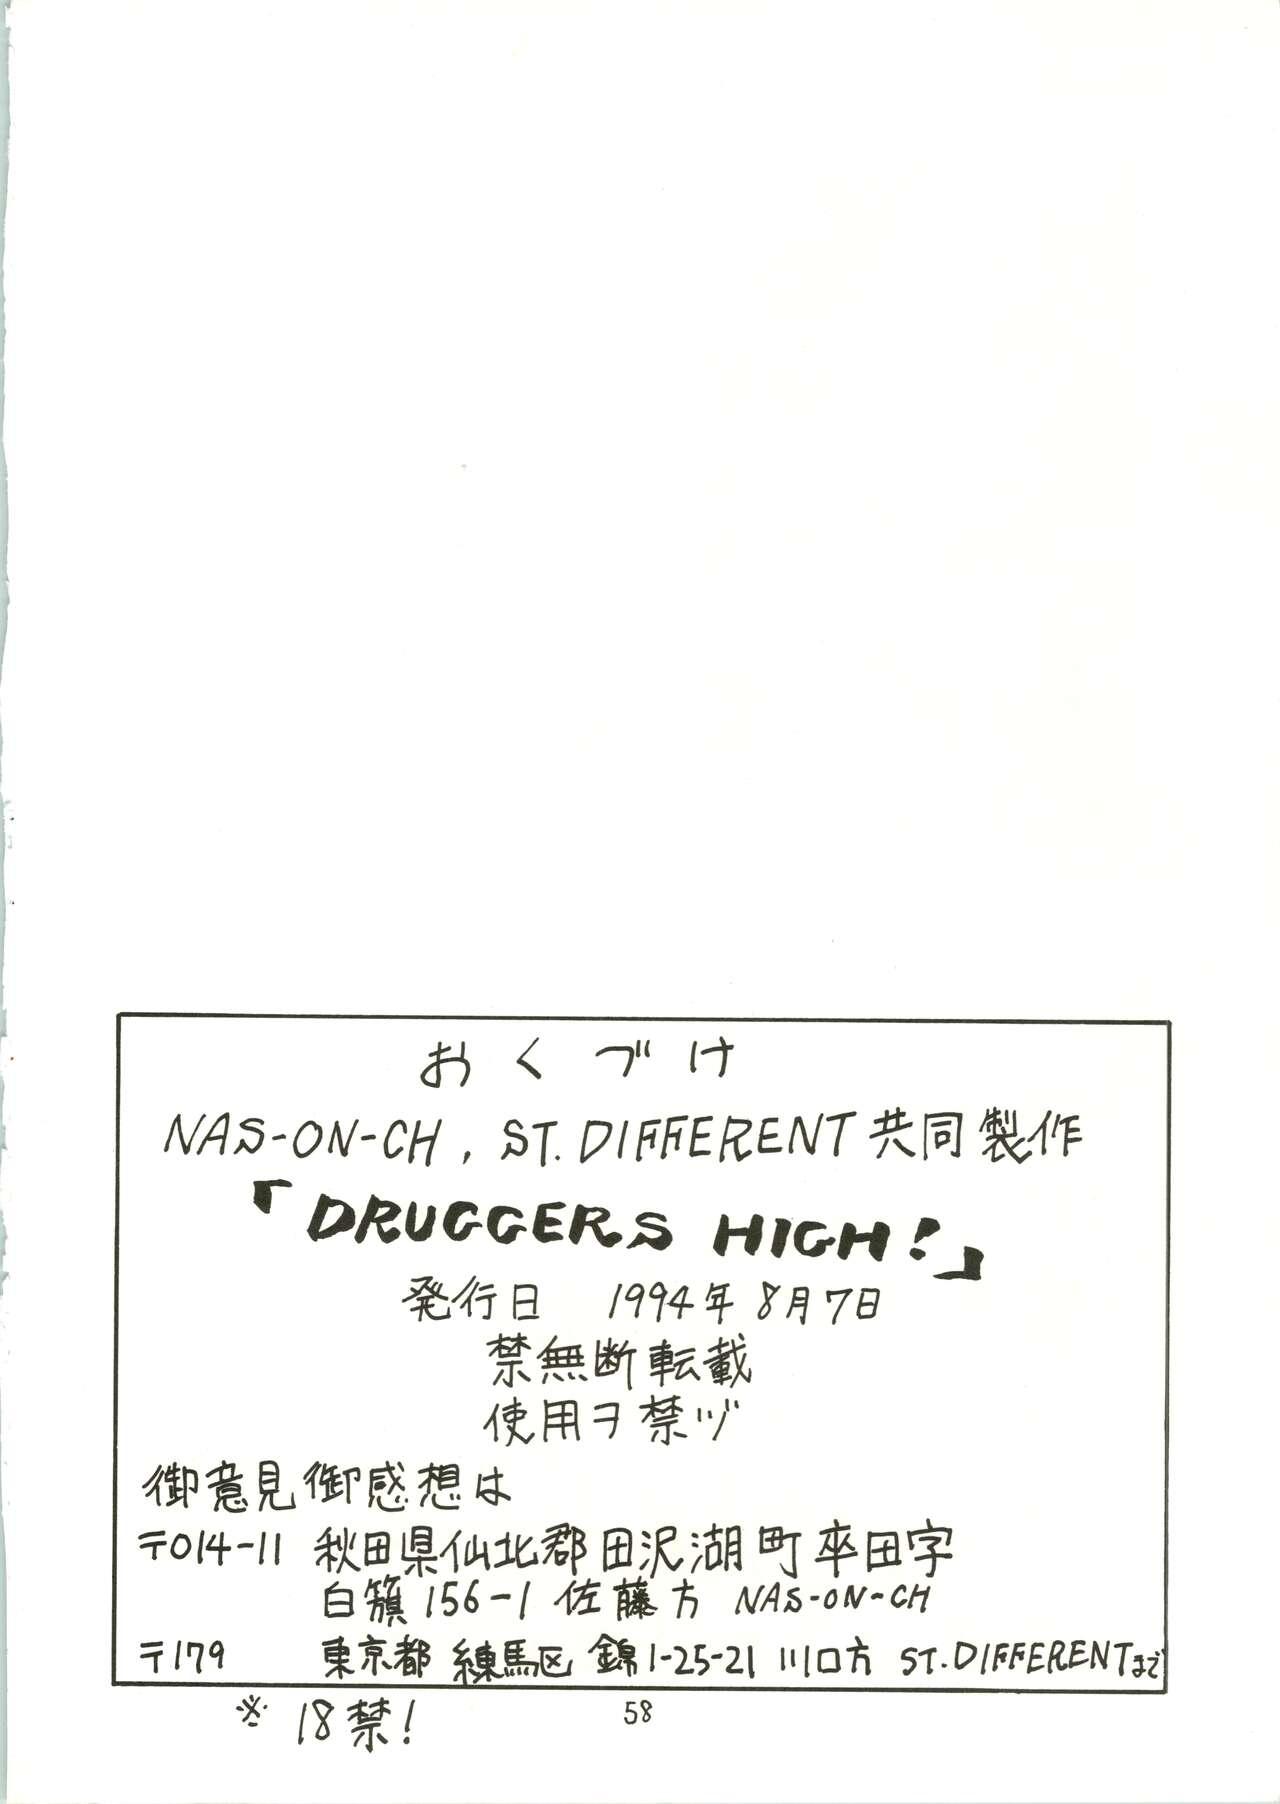 DRUGGERS HIGH!! 59